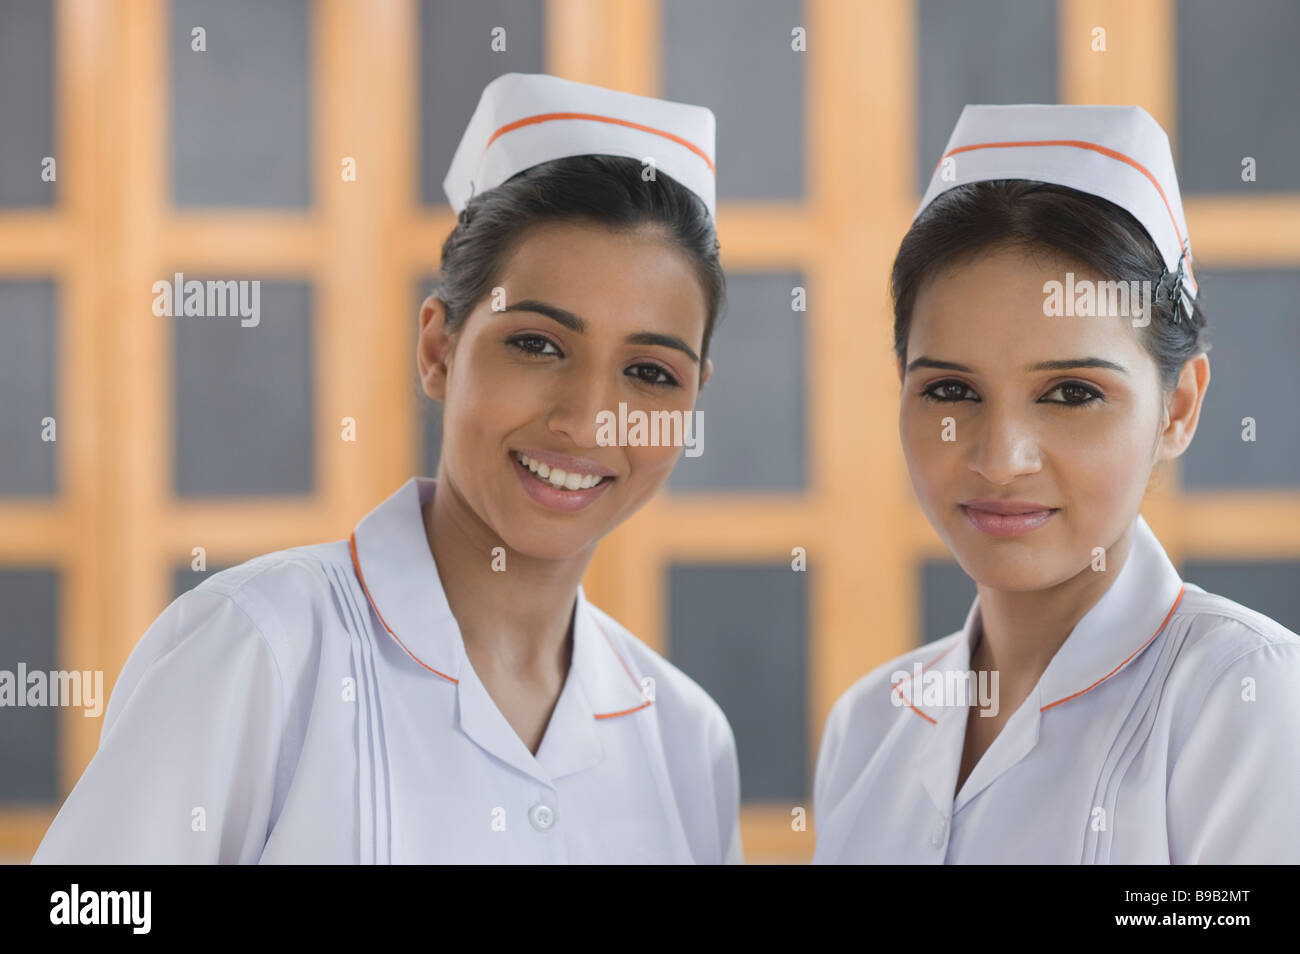 Retrato de dos enfermeras sonriendo Foto de stock